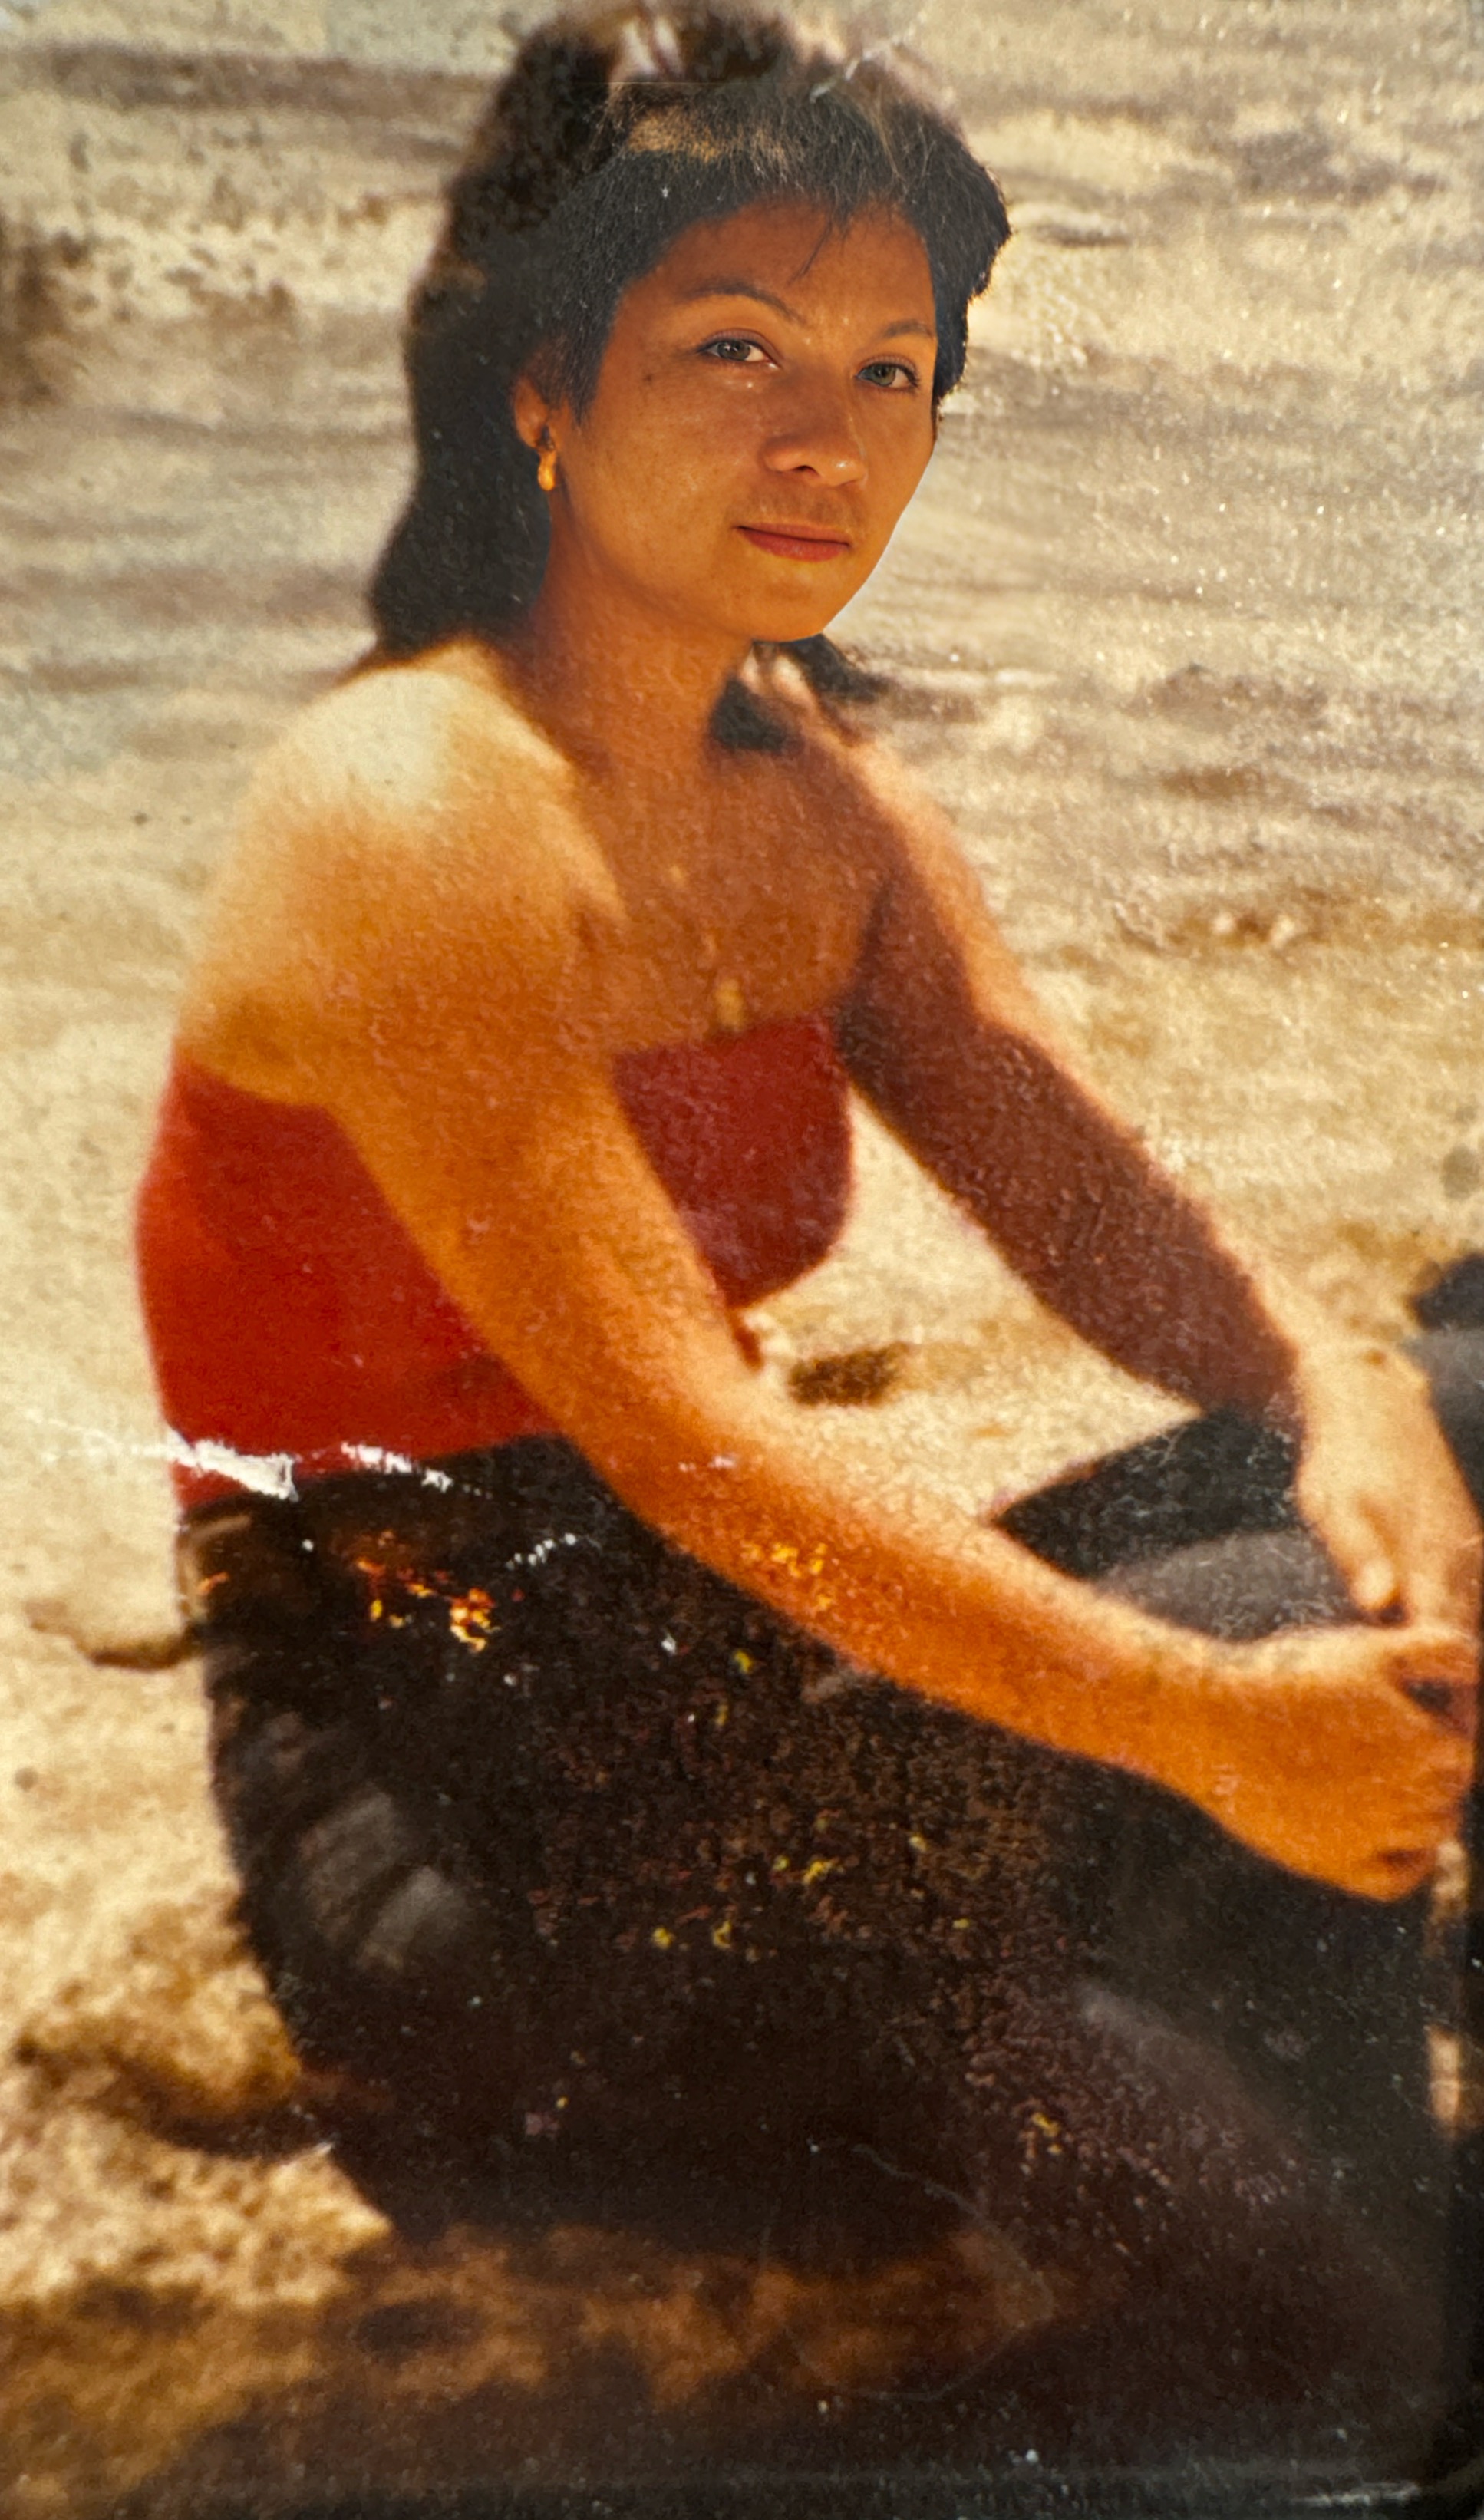 Taken at Tinian beach 1981! Iwas 21 years old way back!